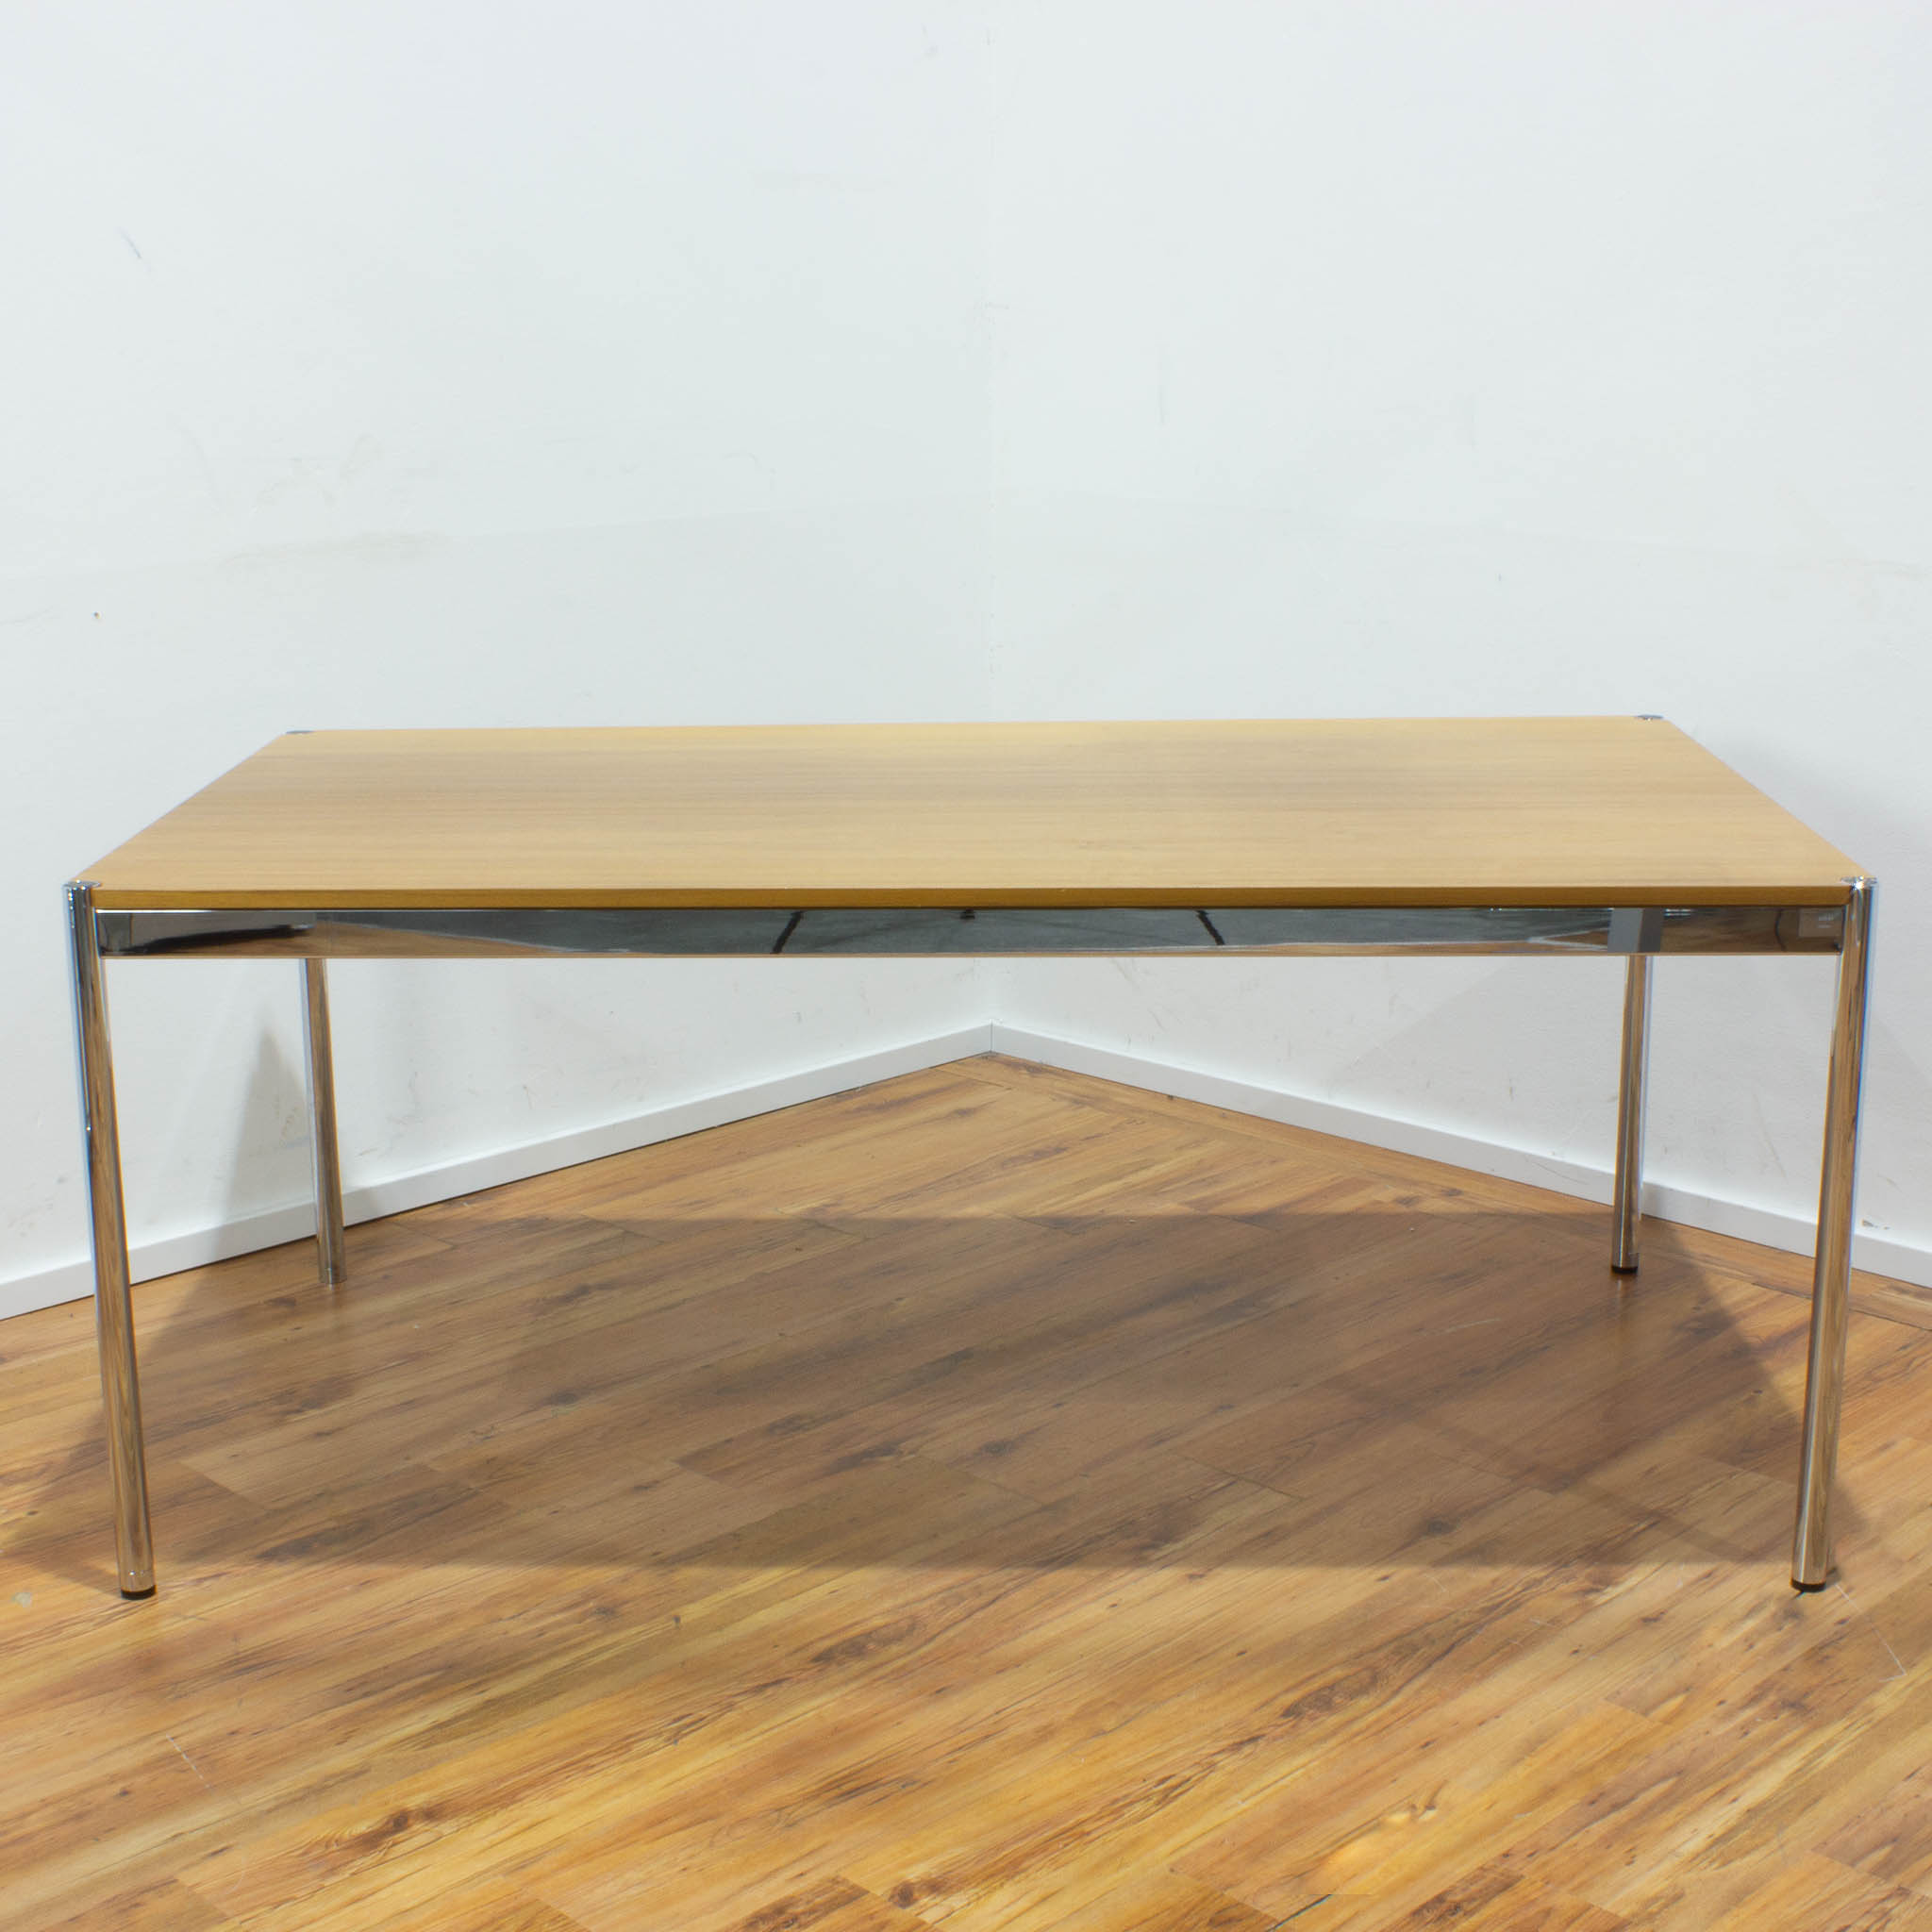 USM Haller Schreibtisch - Tischplatte buche - gebraucht - 175 x 100 cm